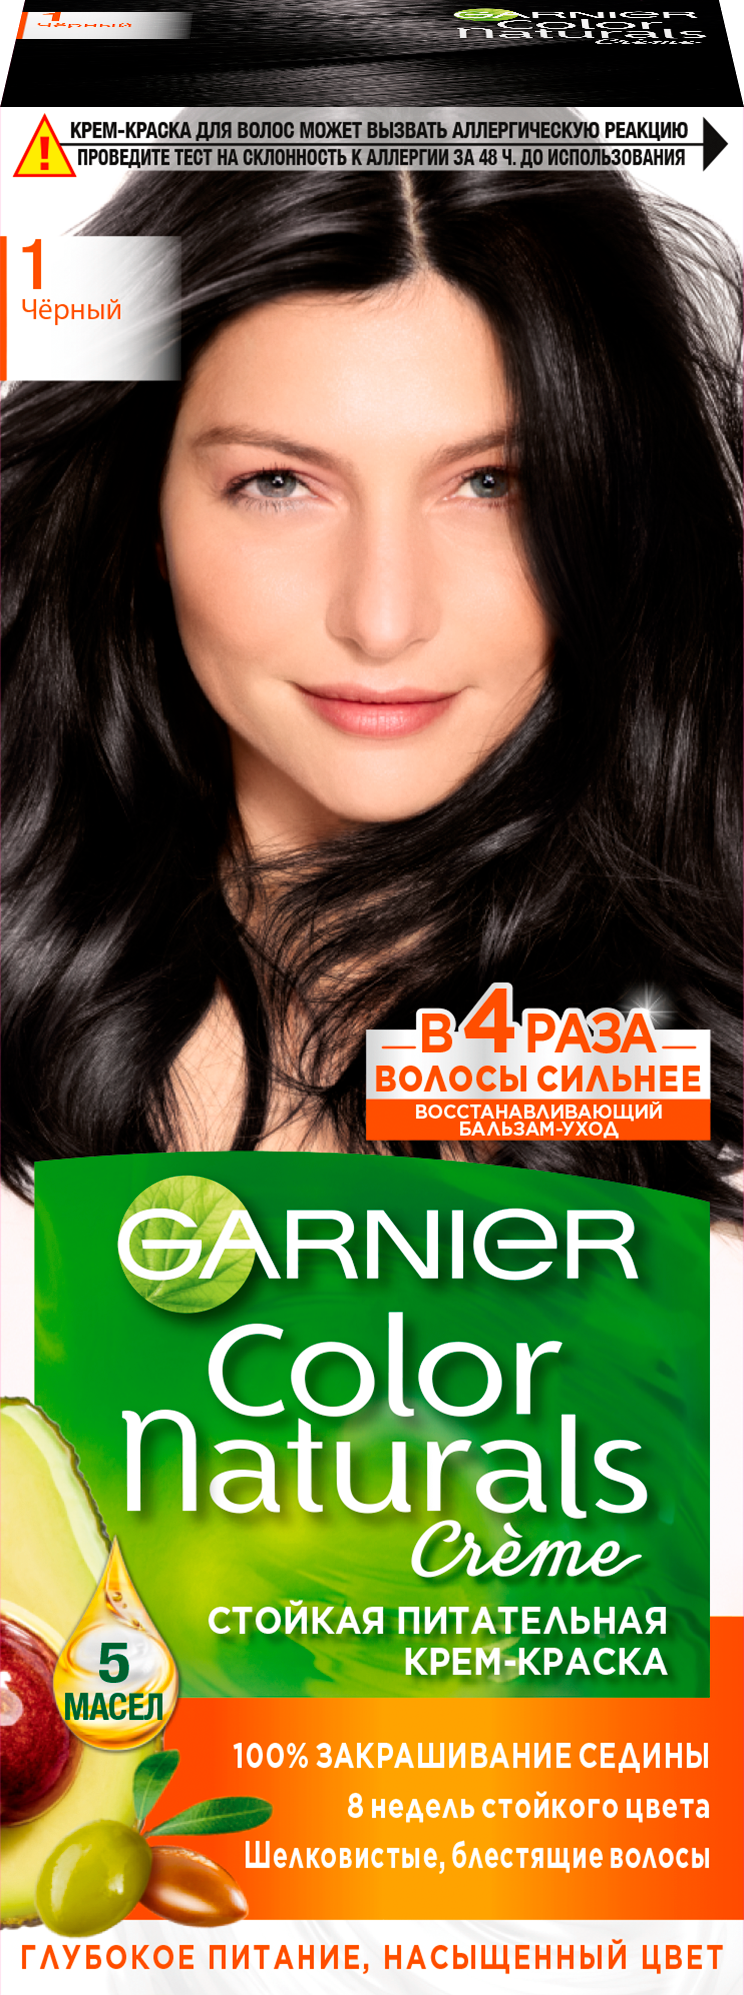 GARNIER Color Naturals стойкая питательная крем-краска для волос, 1 черный, 110 мл